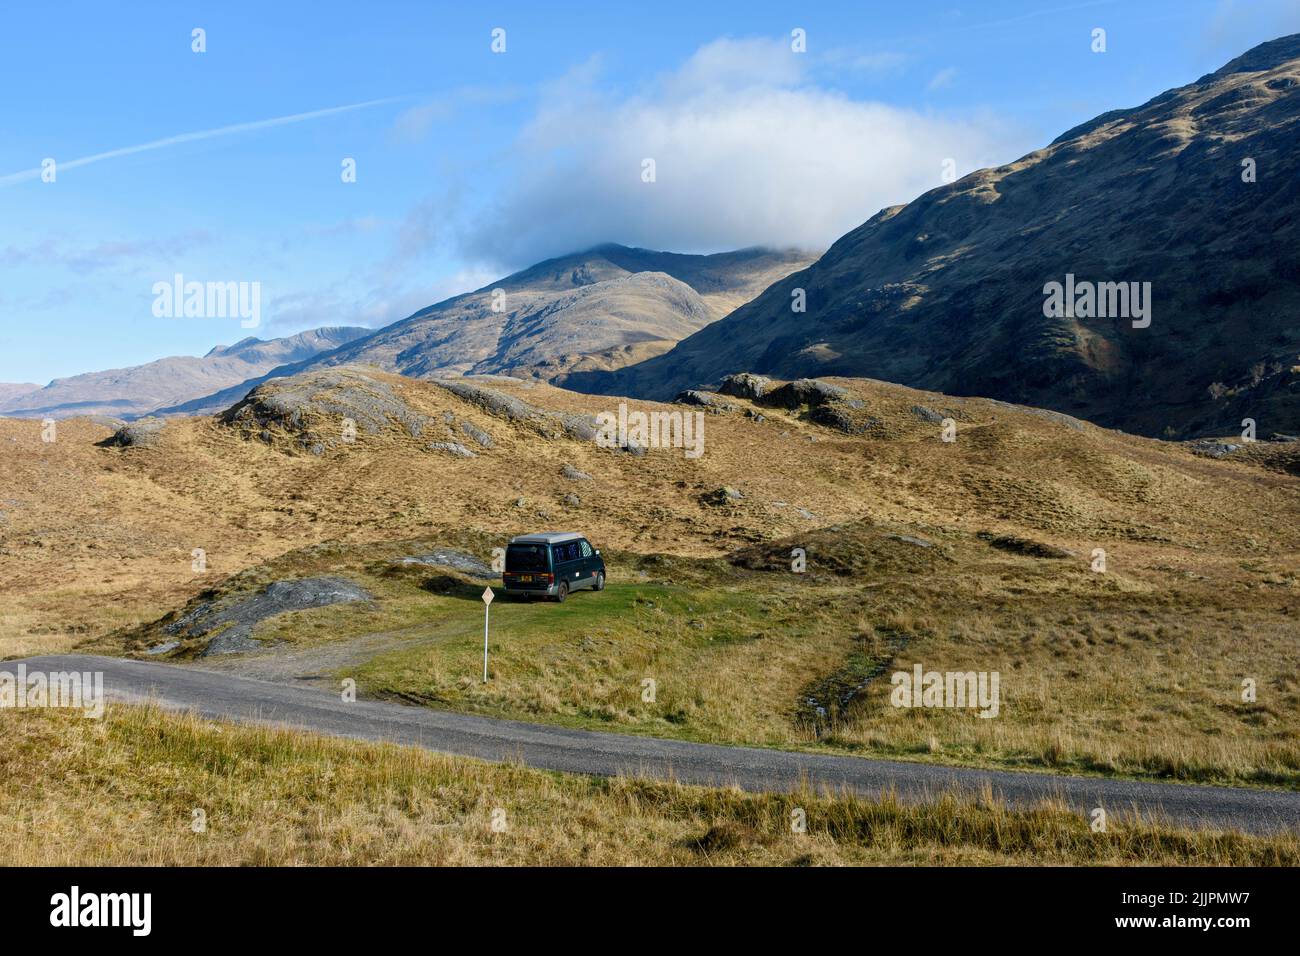 Buidhe Bheinn desde cerca de Loch un Doire Duibh, sobre Kinloch Hourn, región de tierras altas, Escocia, Reino Unido. Mazda Bongo autocaravanas en primer plano. Foto de stock